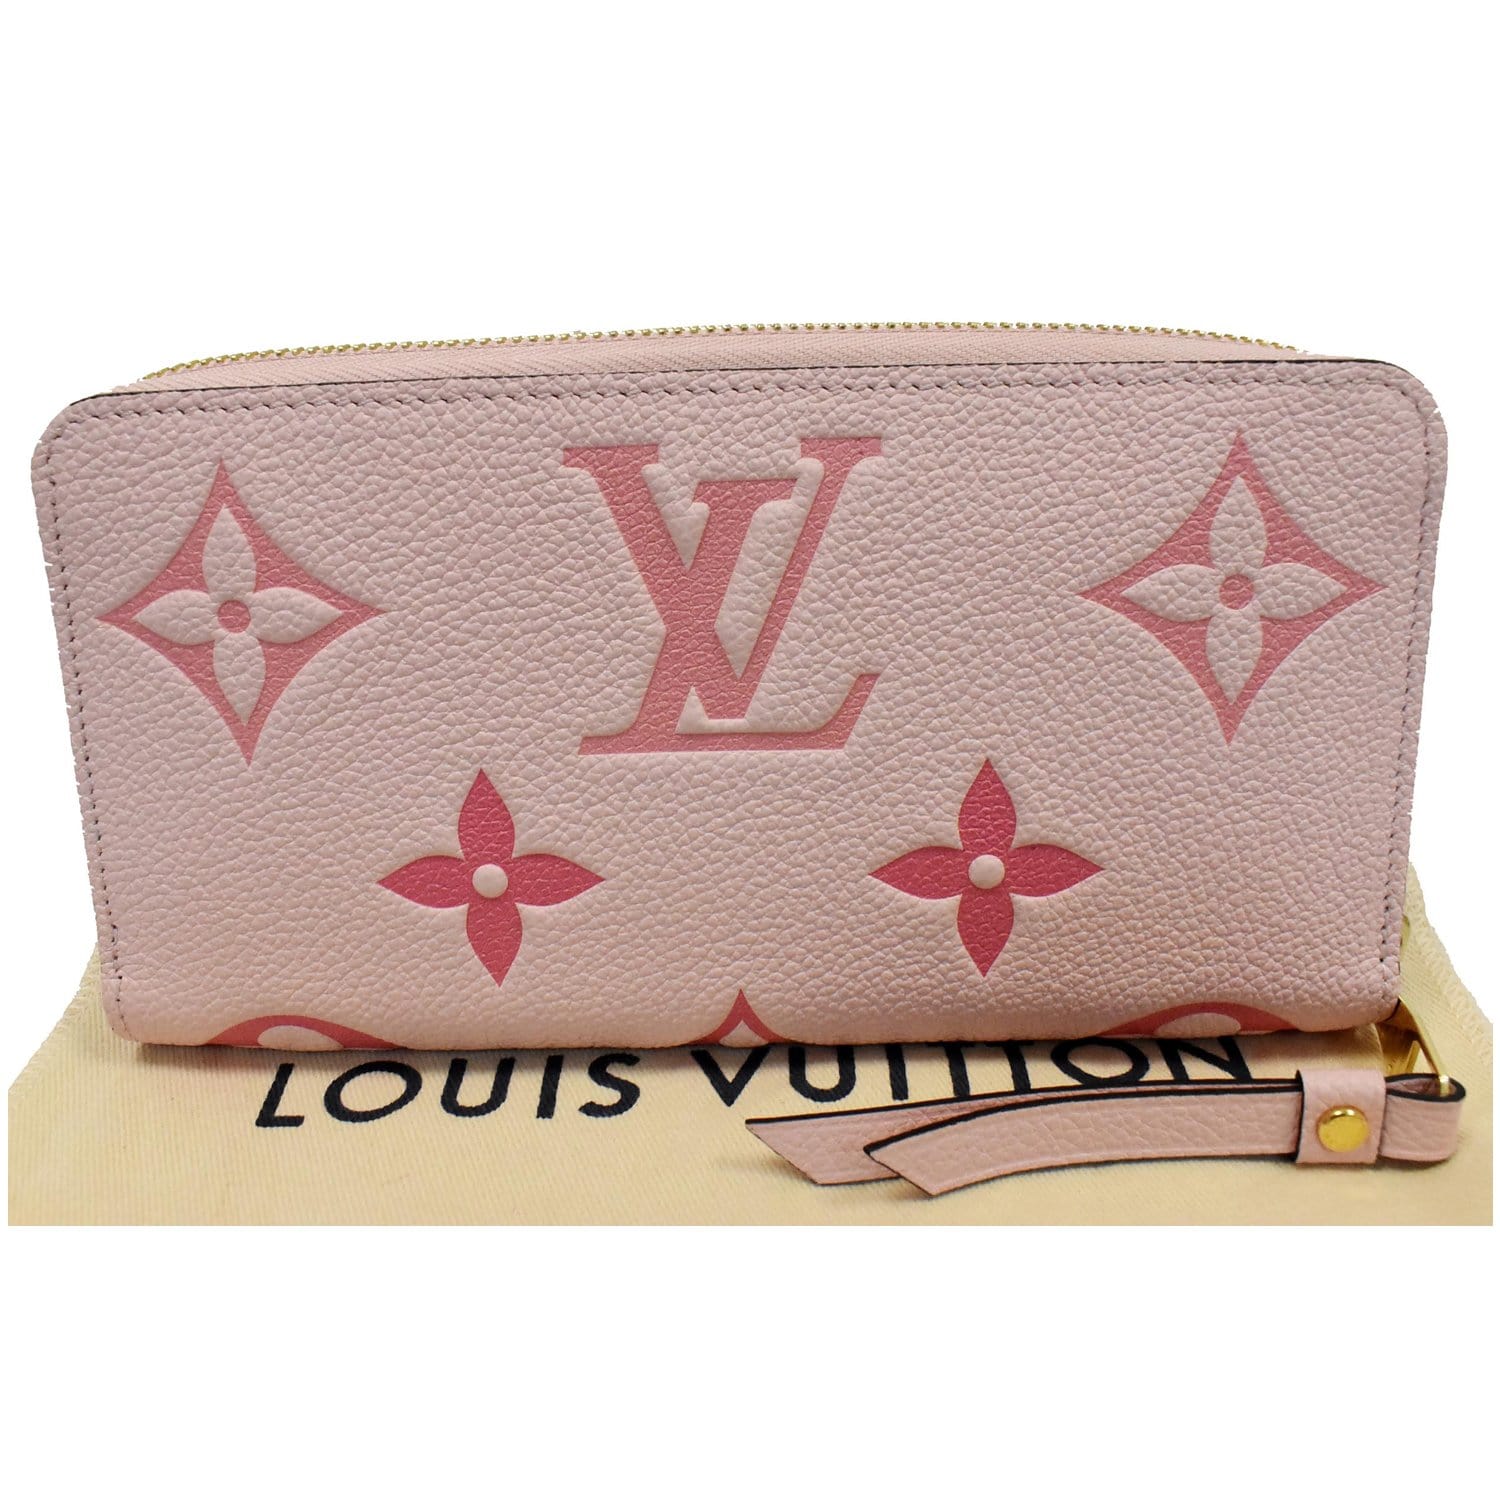 Louis Vuitton Monogram Emilie Wallet - The Trove